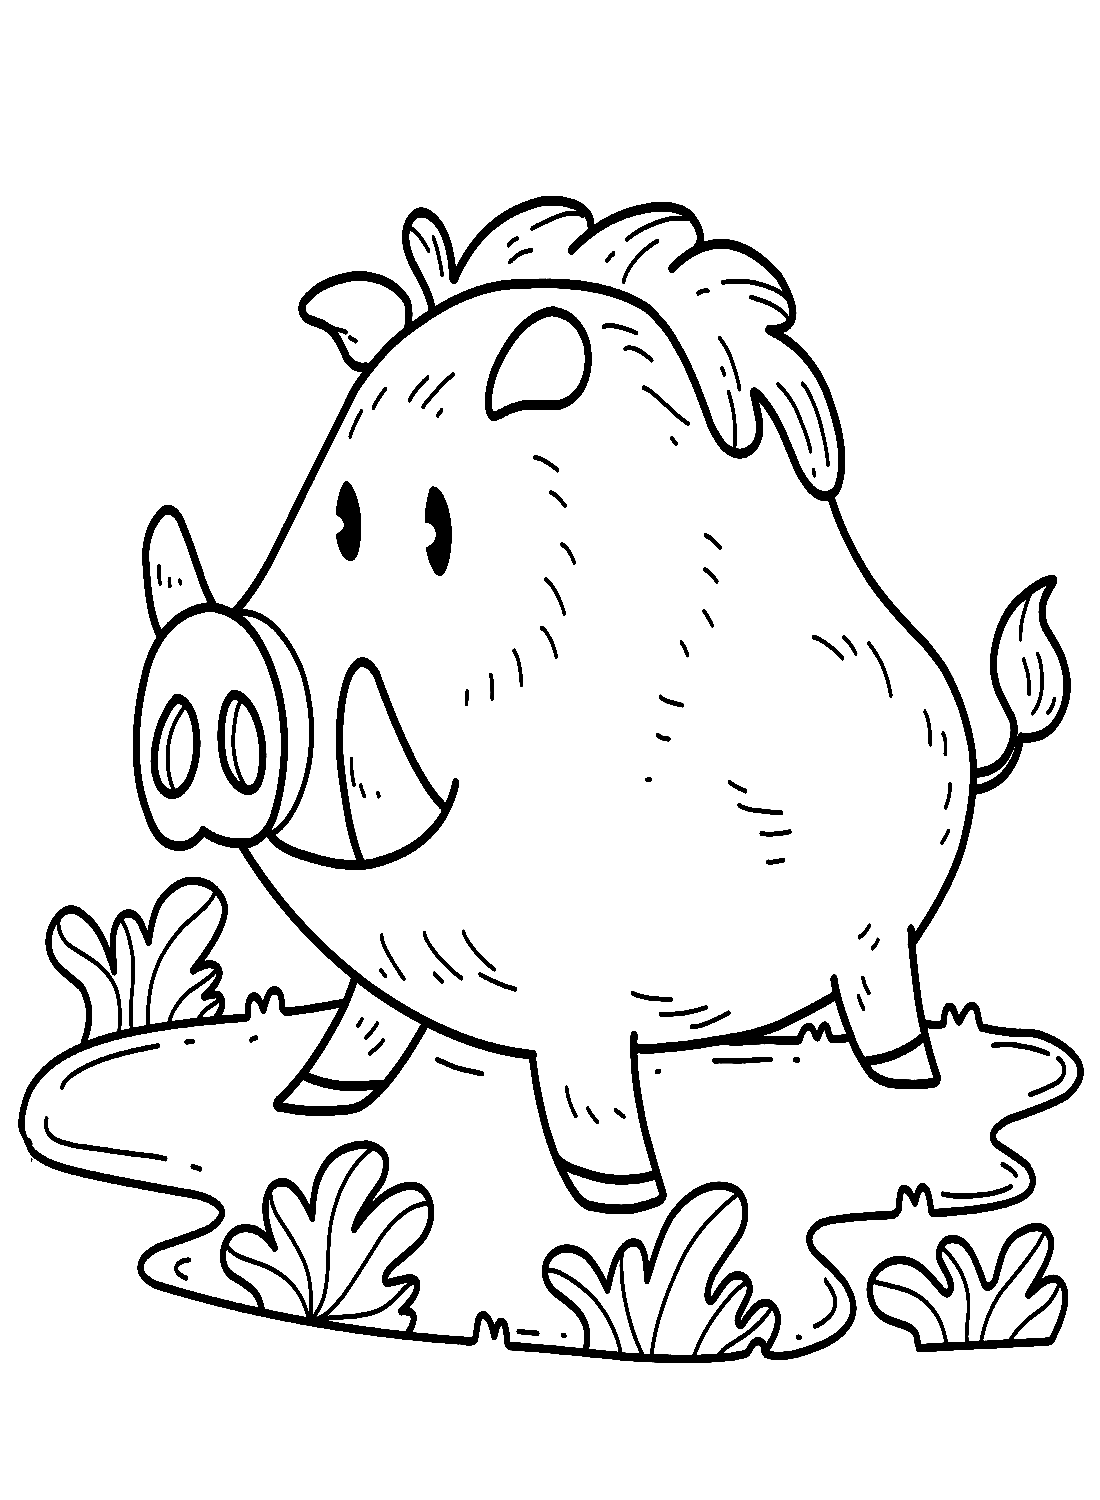 Cartoon-Eber steht auf dem Boden von Wildschwein